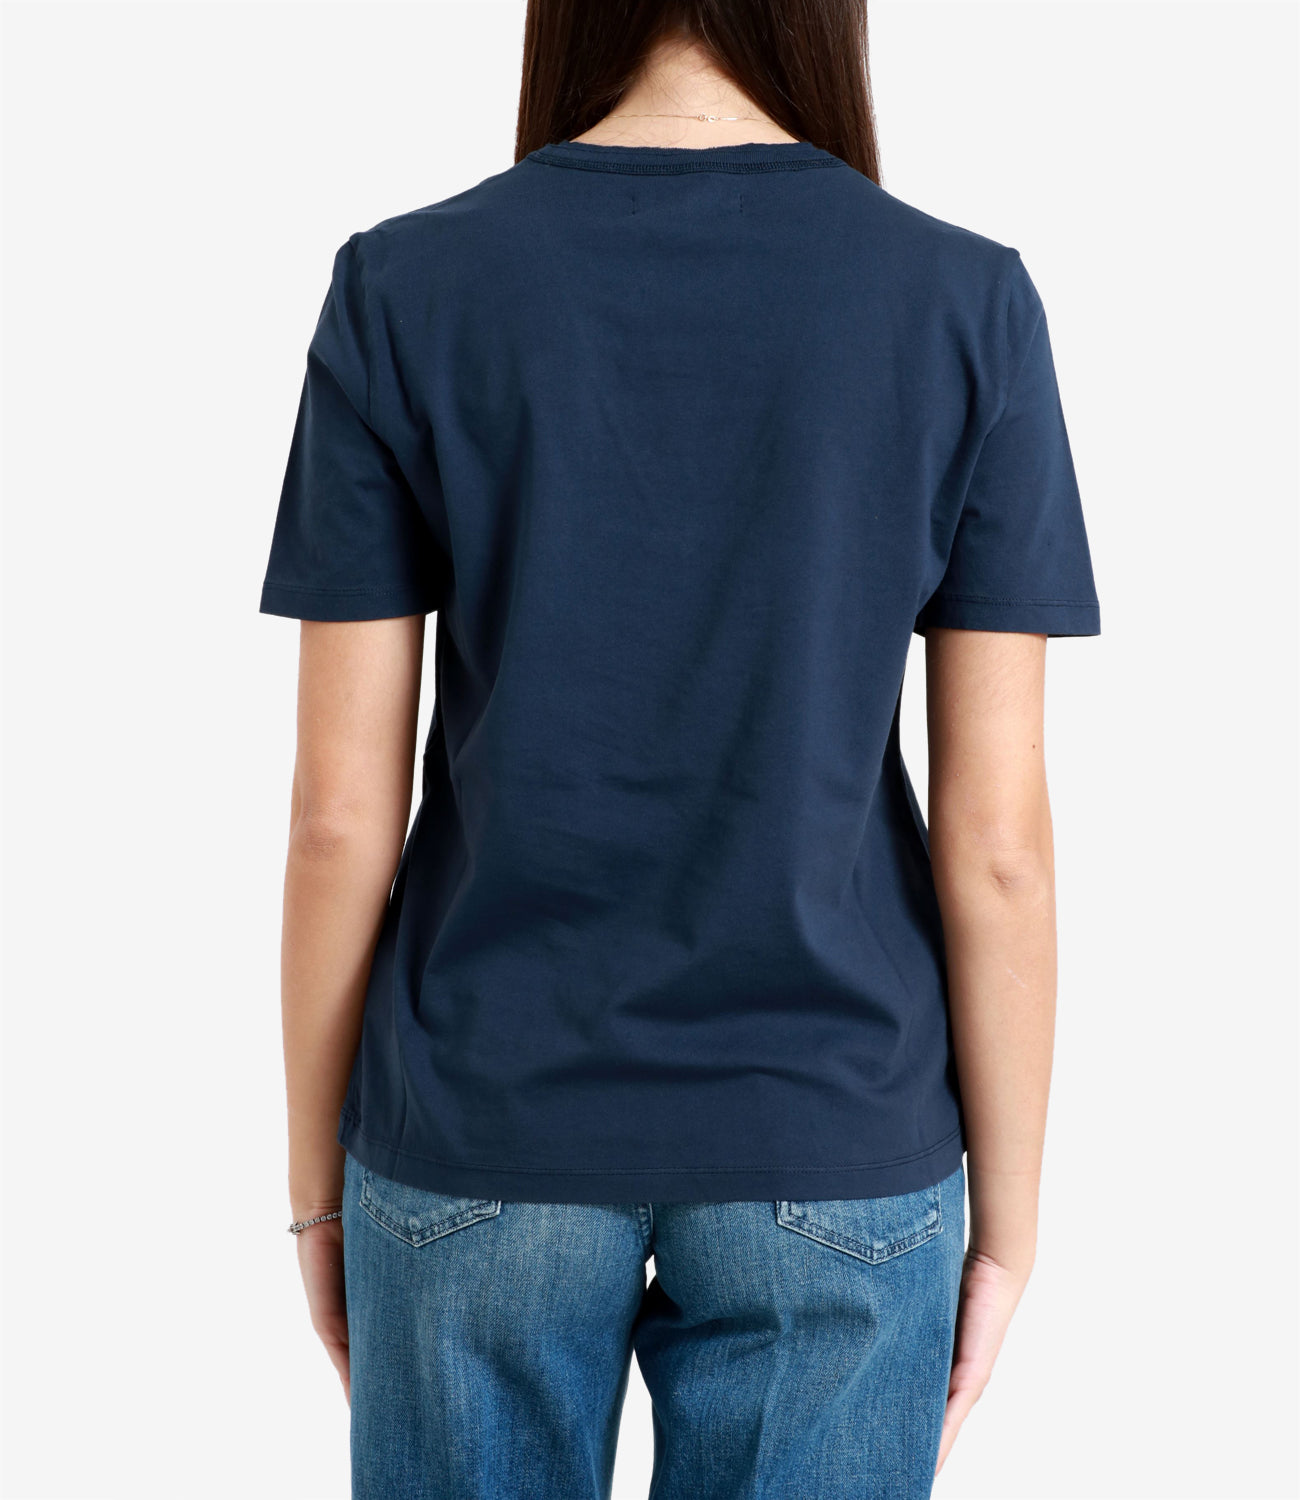 Grifoni | T-Shirt Blu Navy